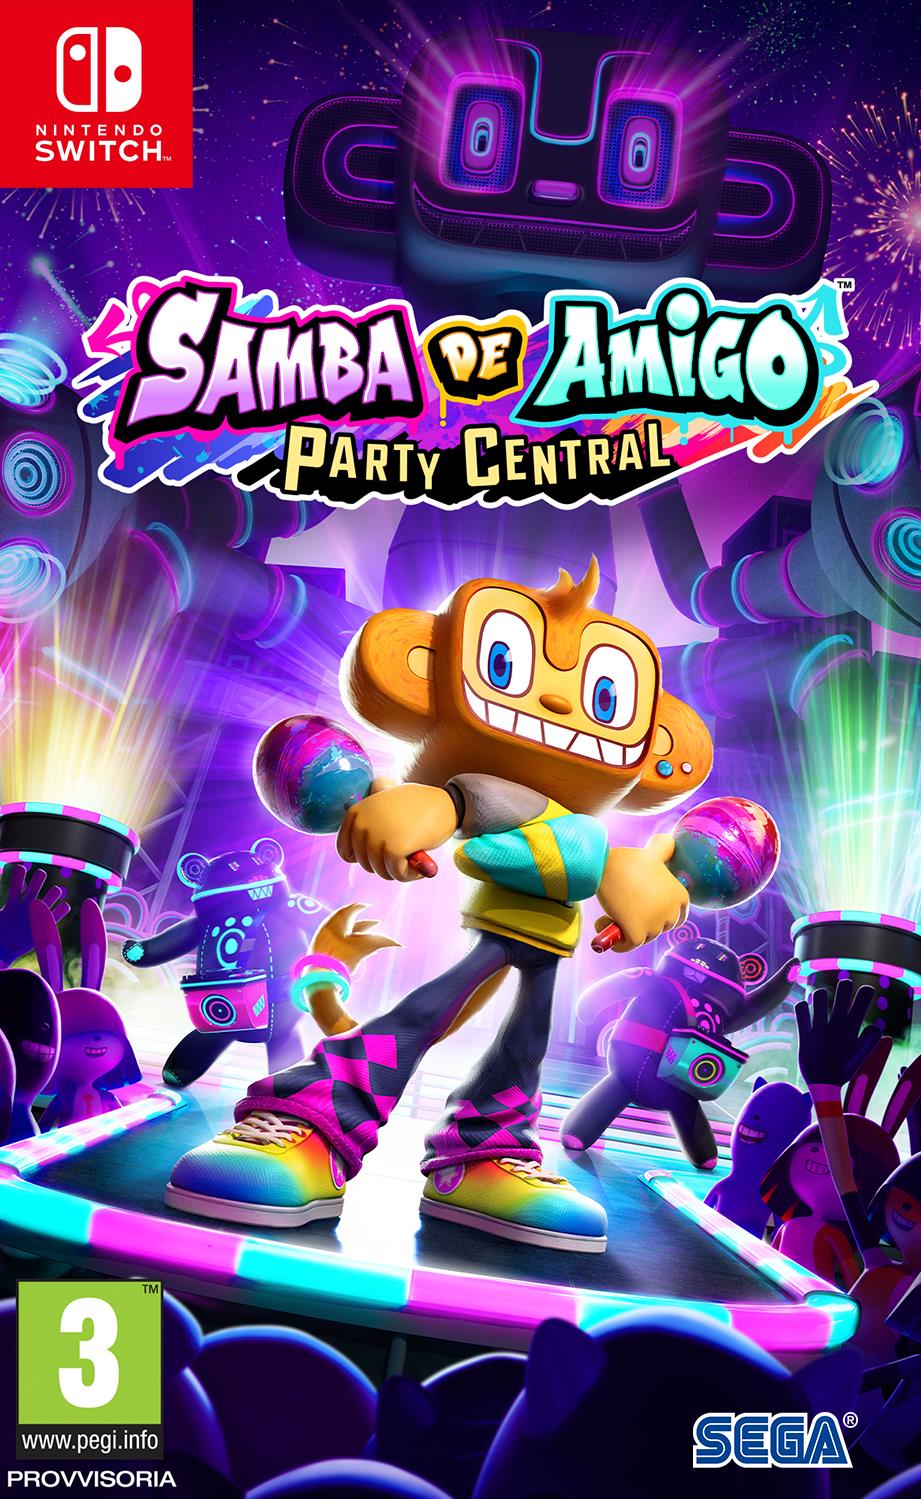 Sega Videogioco Samba De